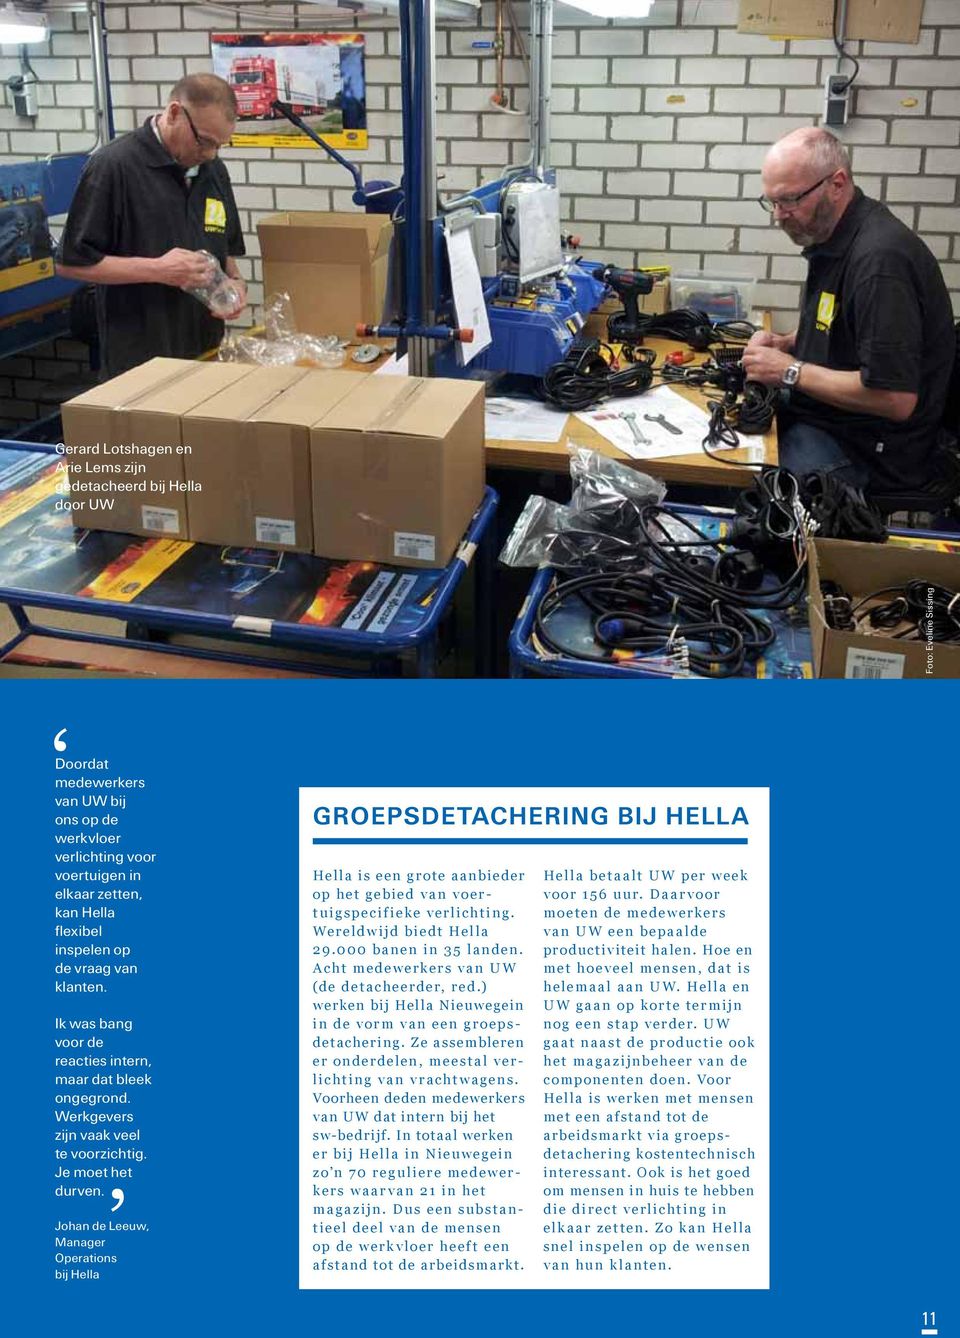 Johan de Leeuw, Manager Operations bij Hella Groepsdetachering bij Hella Hella is een grote aanbieder op het gebied van voertuigspecifieke verlichting. Wereldwijd biedt Hella 29.